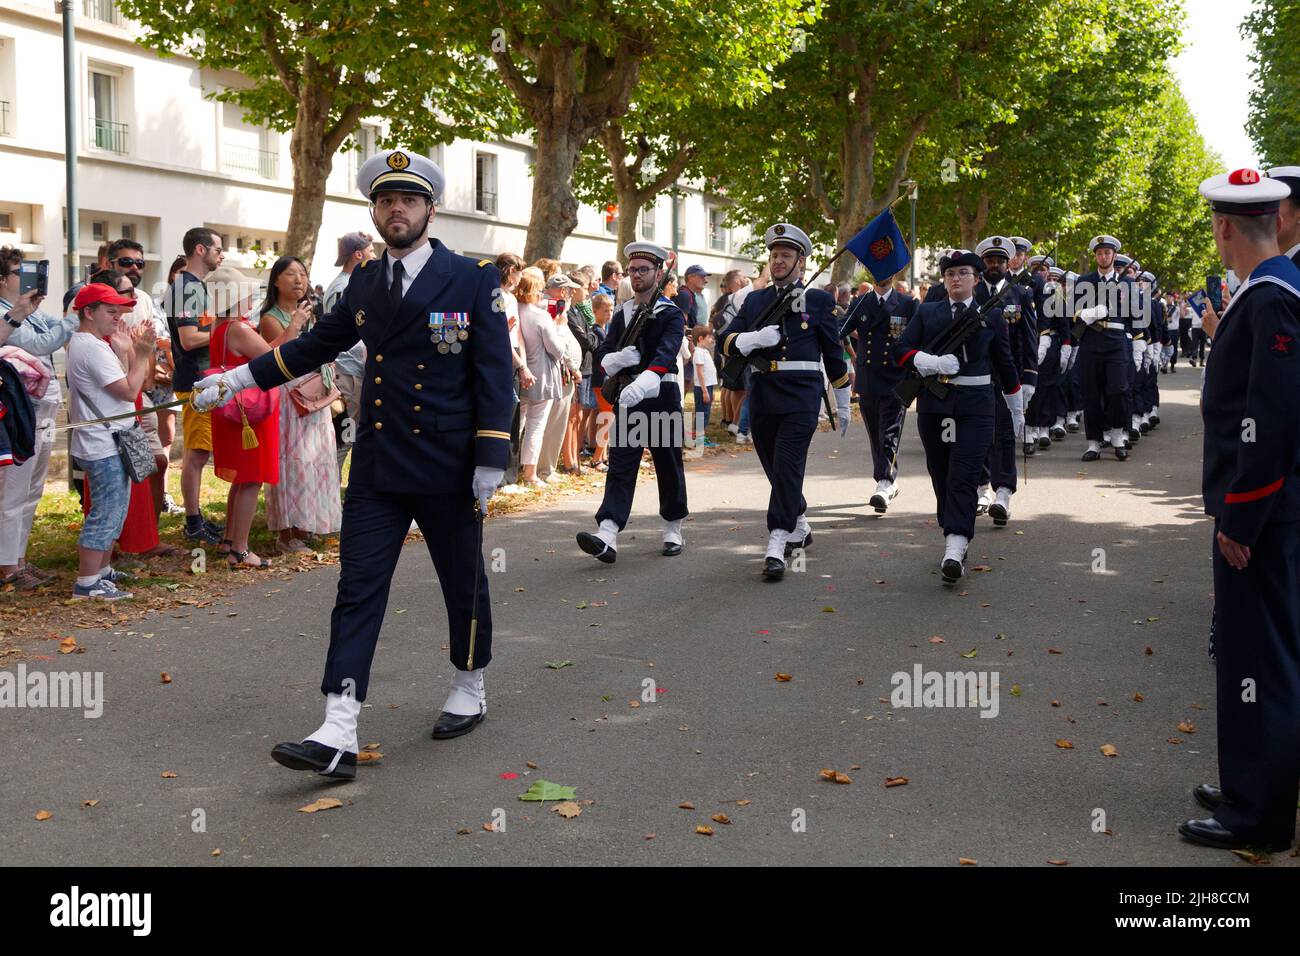 Brest, Frankreich - 14 2022. Juli: Soldaten der Marineaktionskräfte von Brest, der Marineflugplatz von Landivisiau marschieren zum Tag der Bastille. Stockfoto